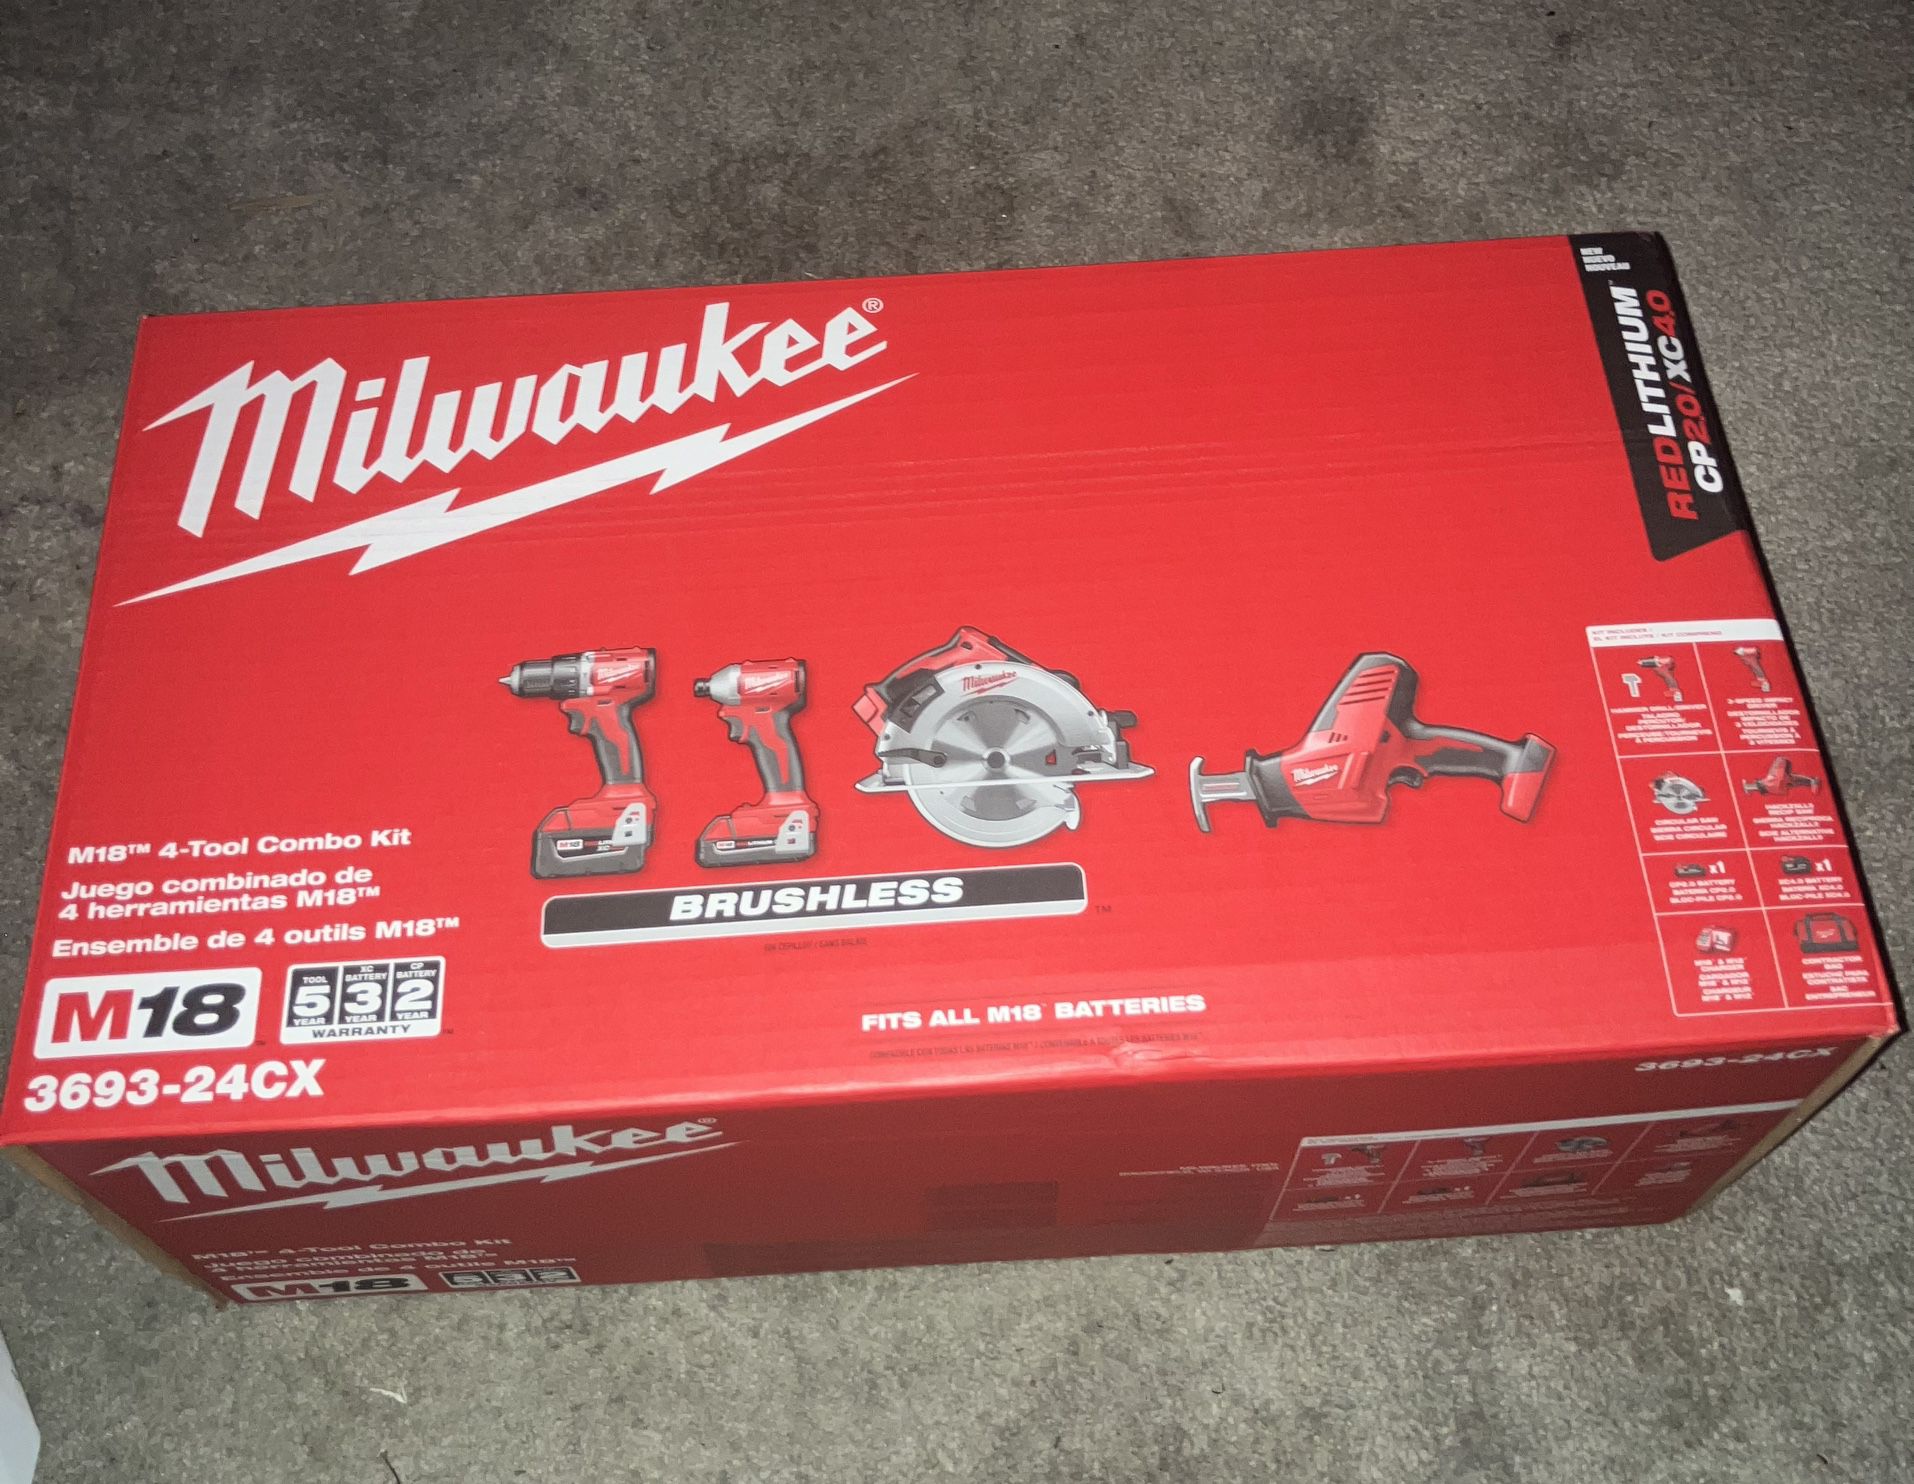 Milwaukee Power Tool